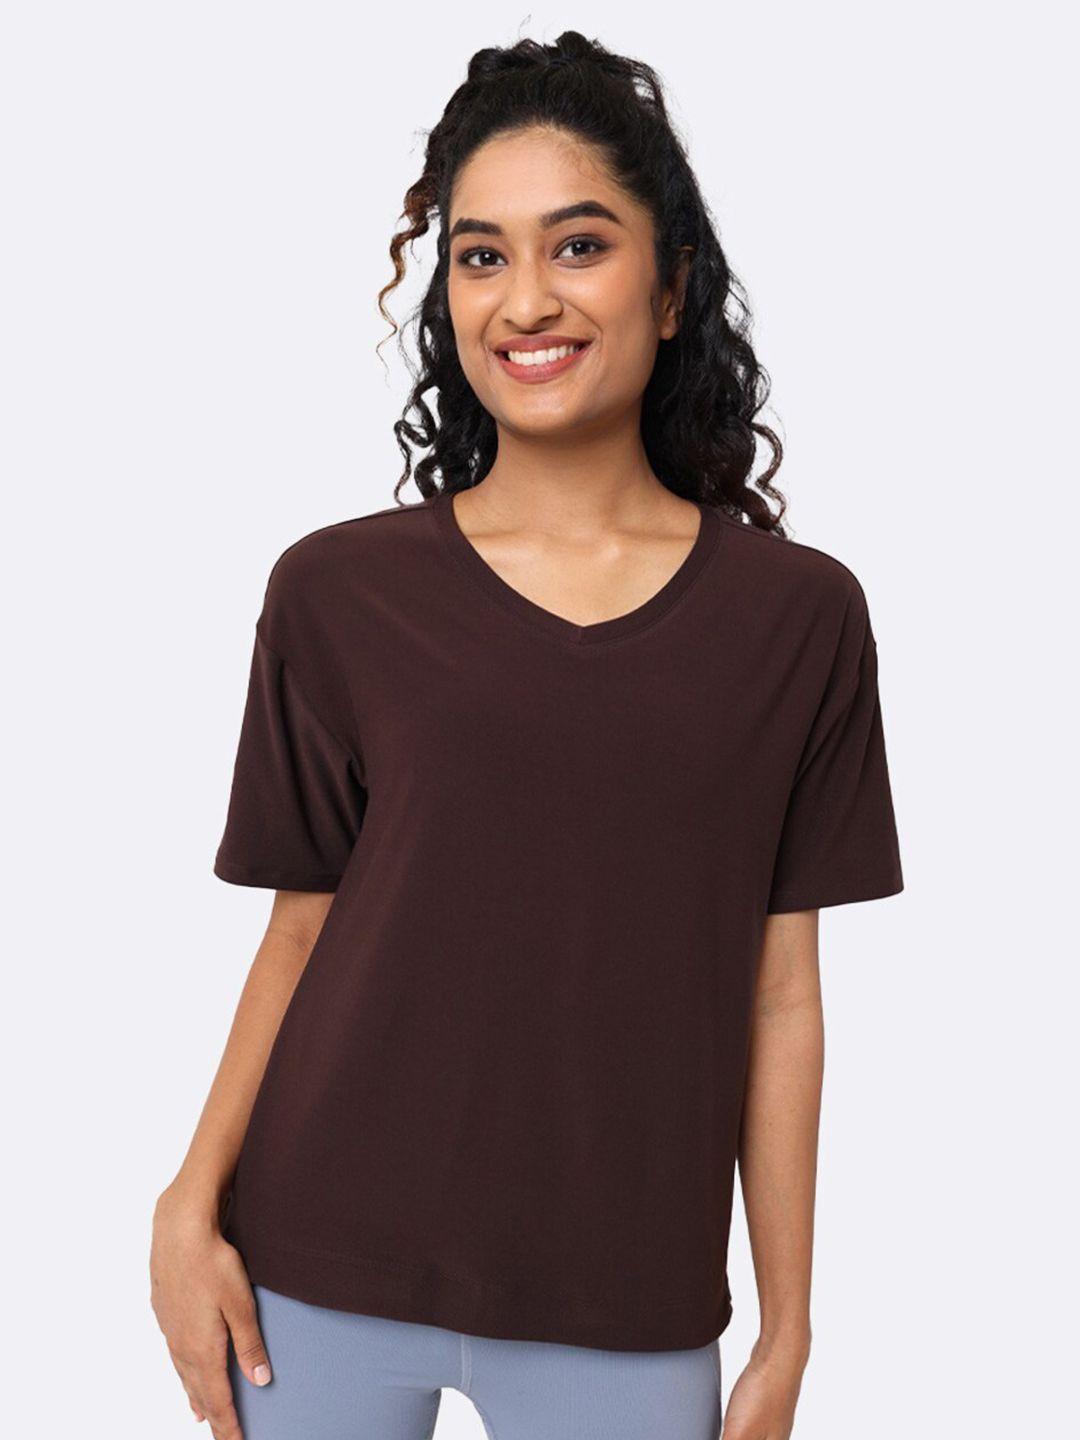 blissclub women brown v-neck moisture wicking t-shirt